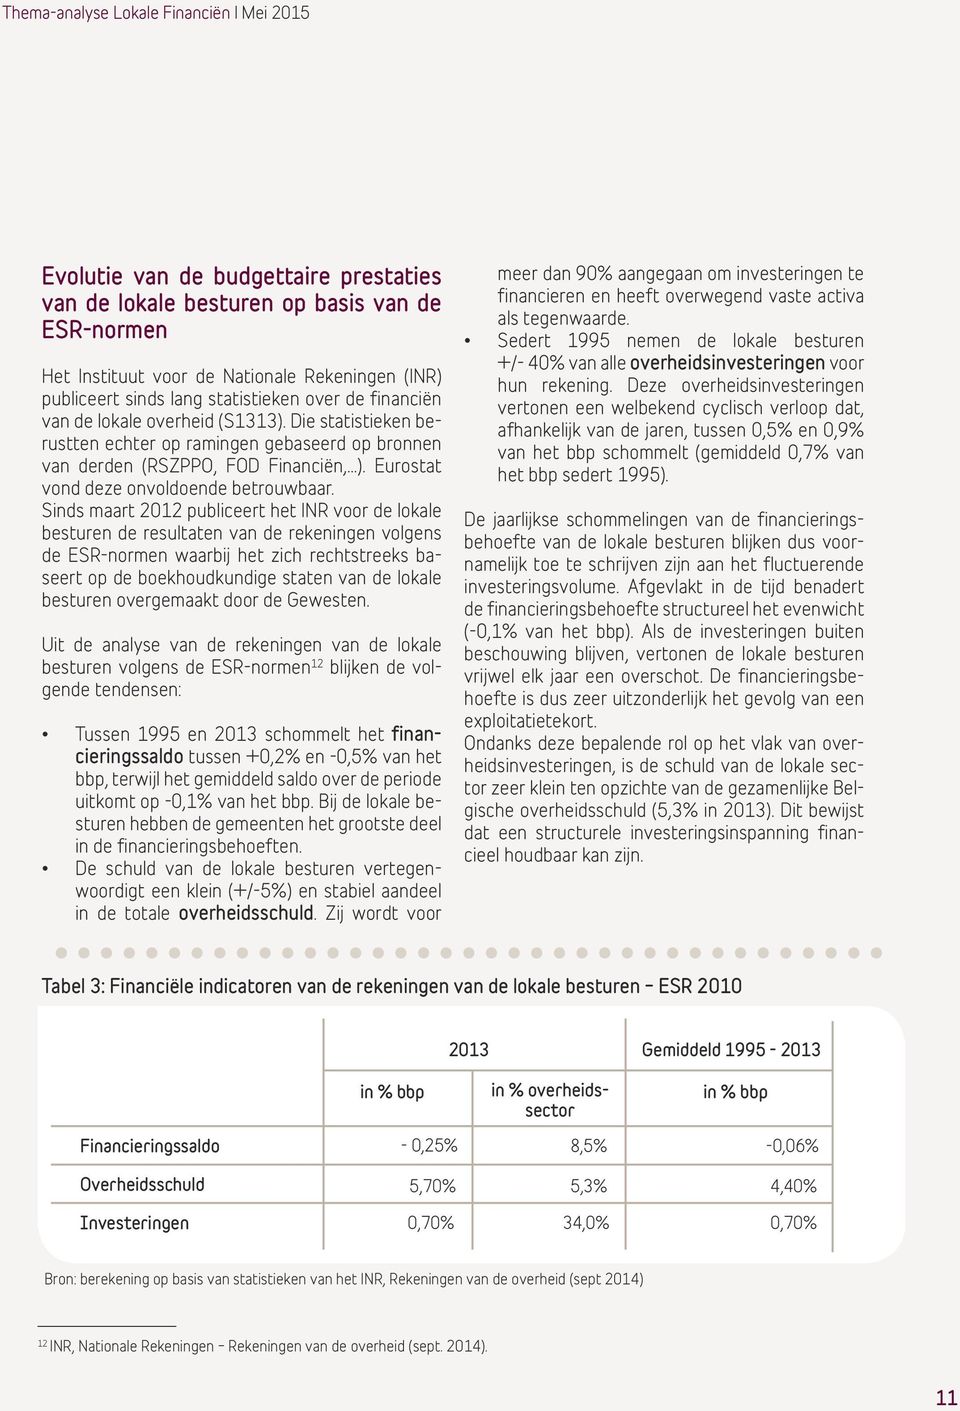 Sinds maart 2012 publiceert het INR voor de lokale besturen de resultaten van de rekeningen volgens de ESR-normen waarbij het zich rechtstreeks baseert op de boekhoudkundige staten van de lokale